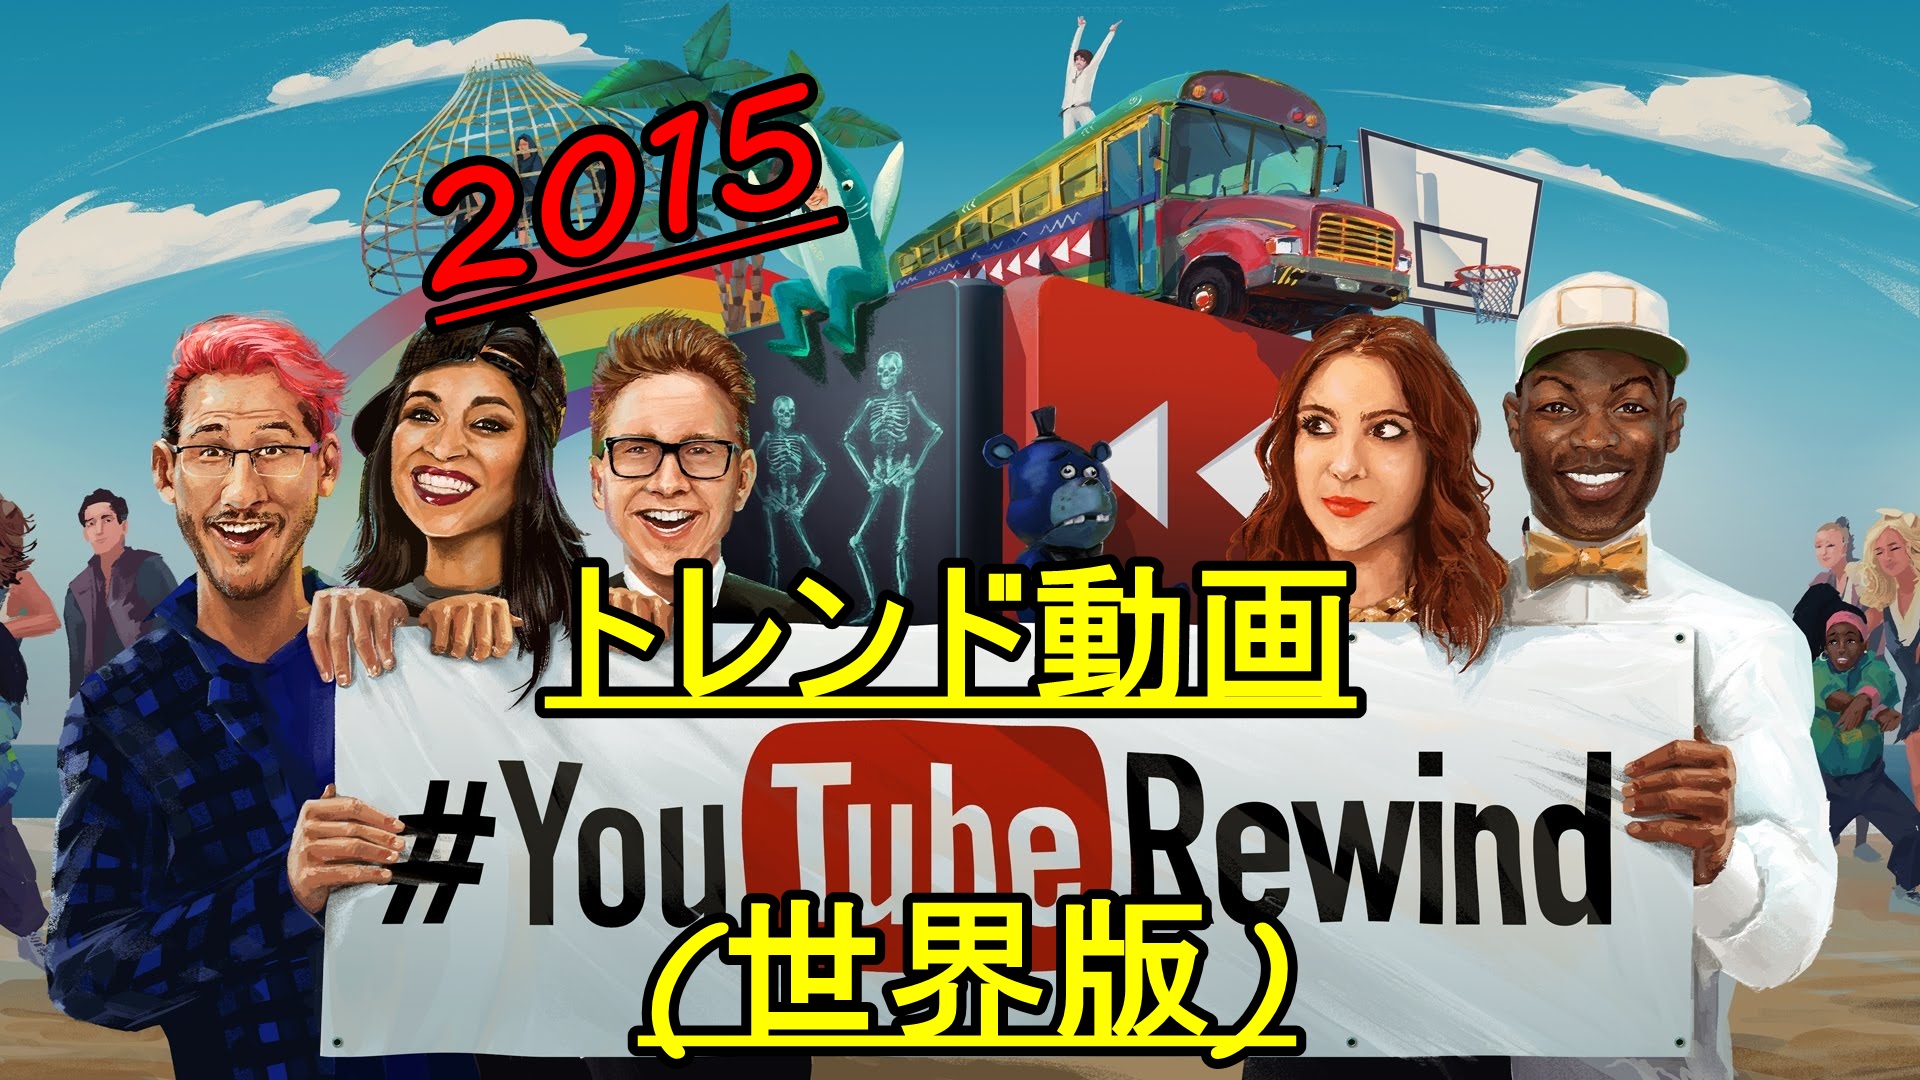 2015年世界で最も再生されたYouTube動画ランキング!世界はスゲェ!!